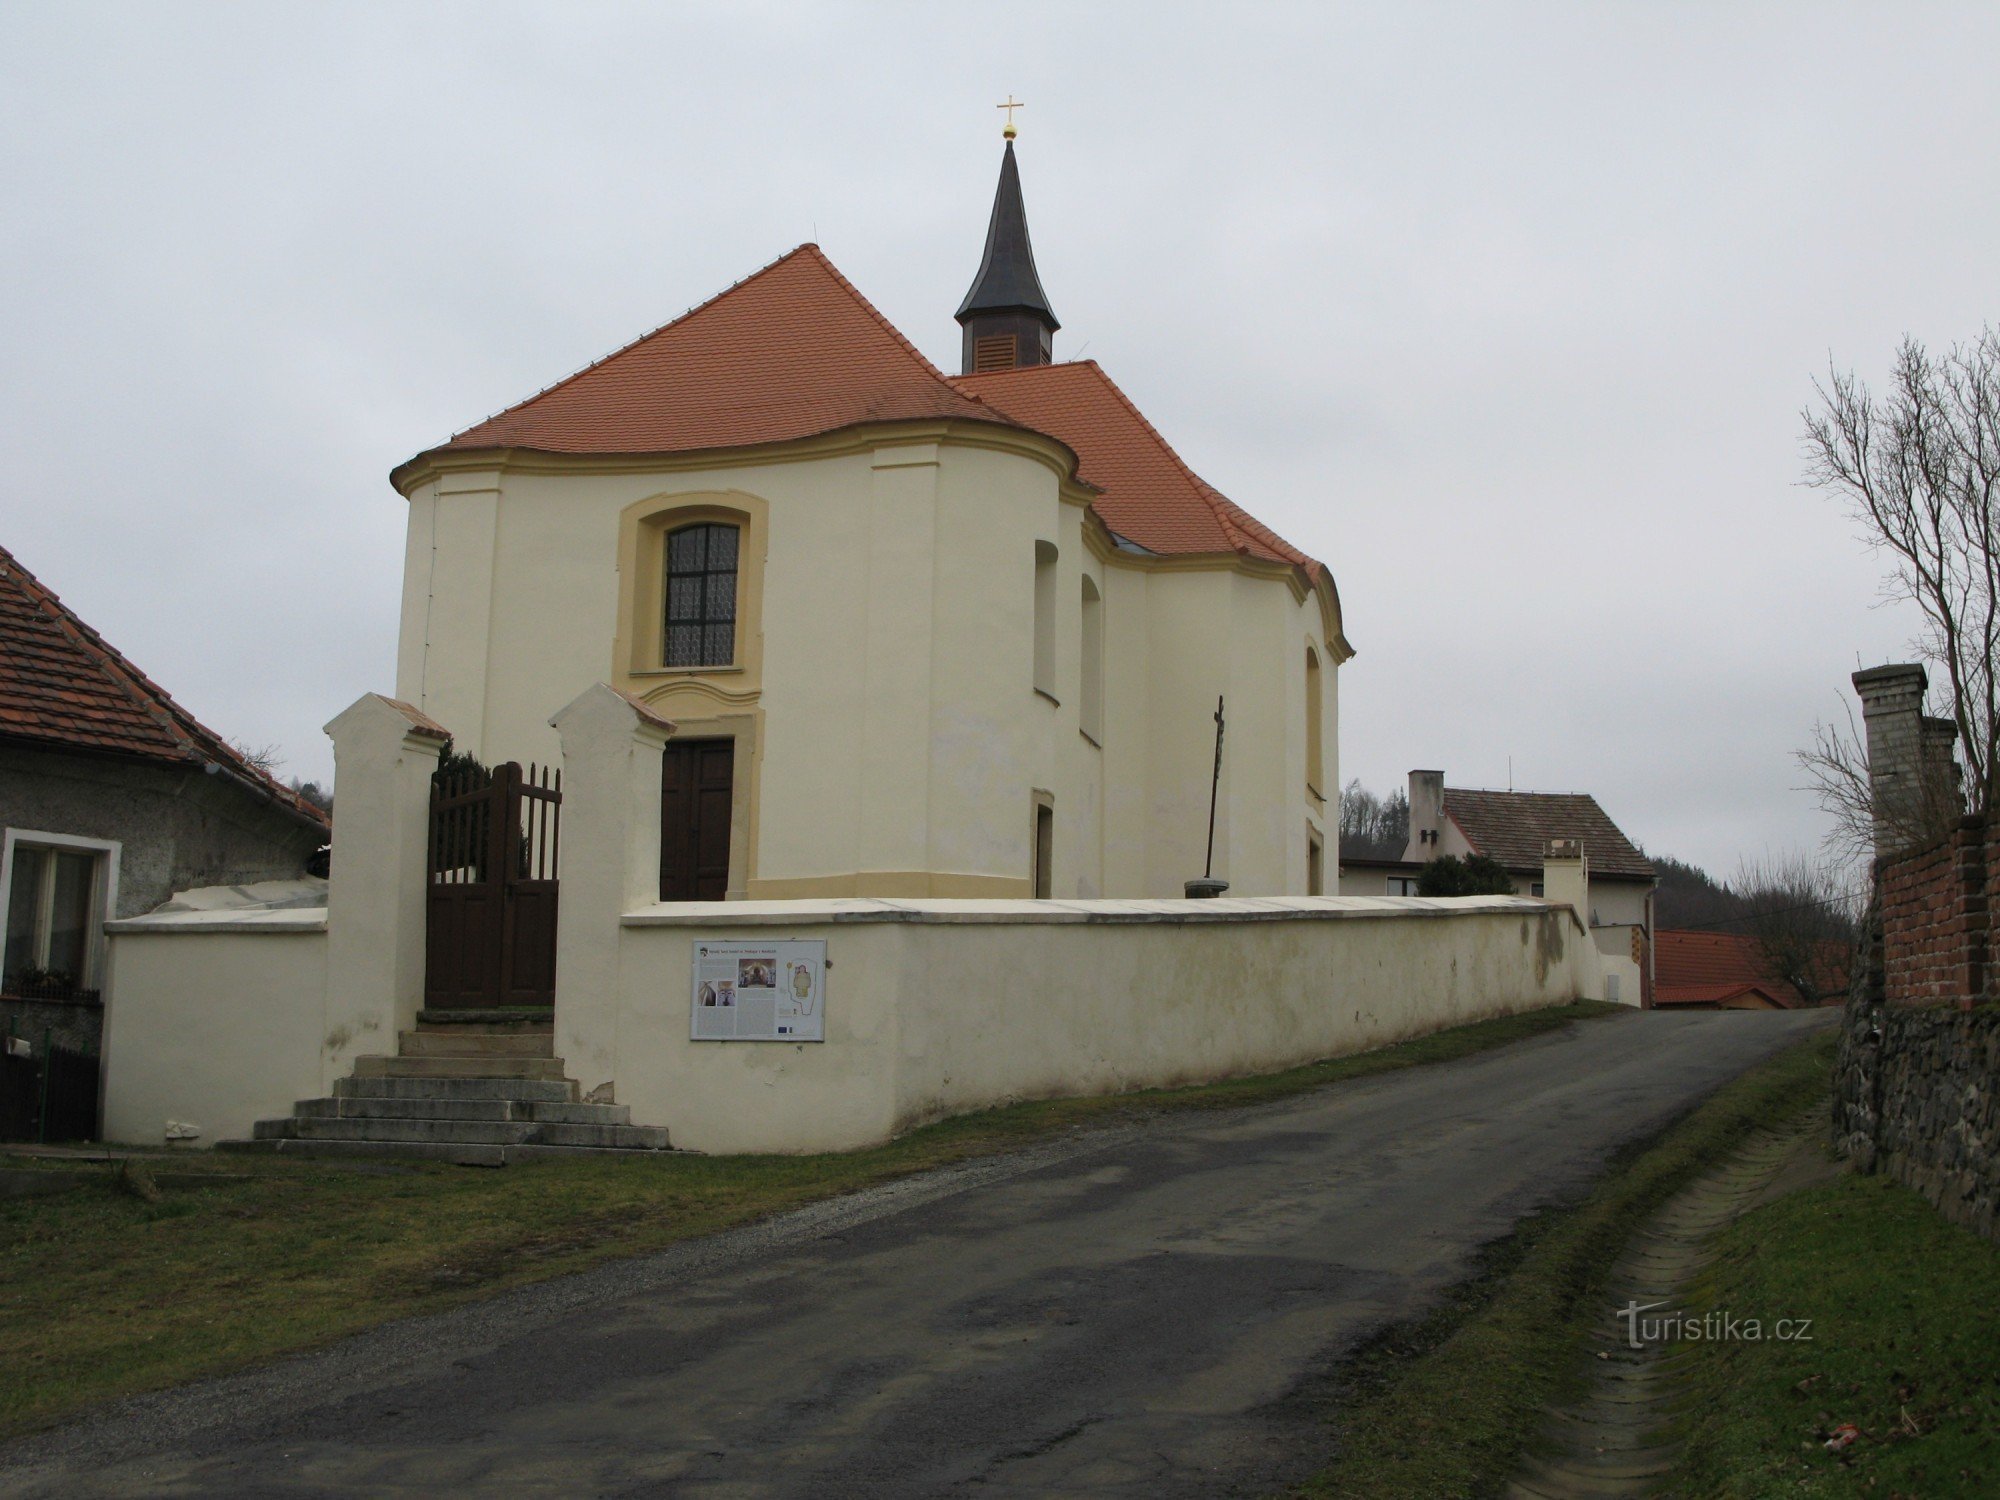 Nezdice - Nhà thờ St. đào lên